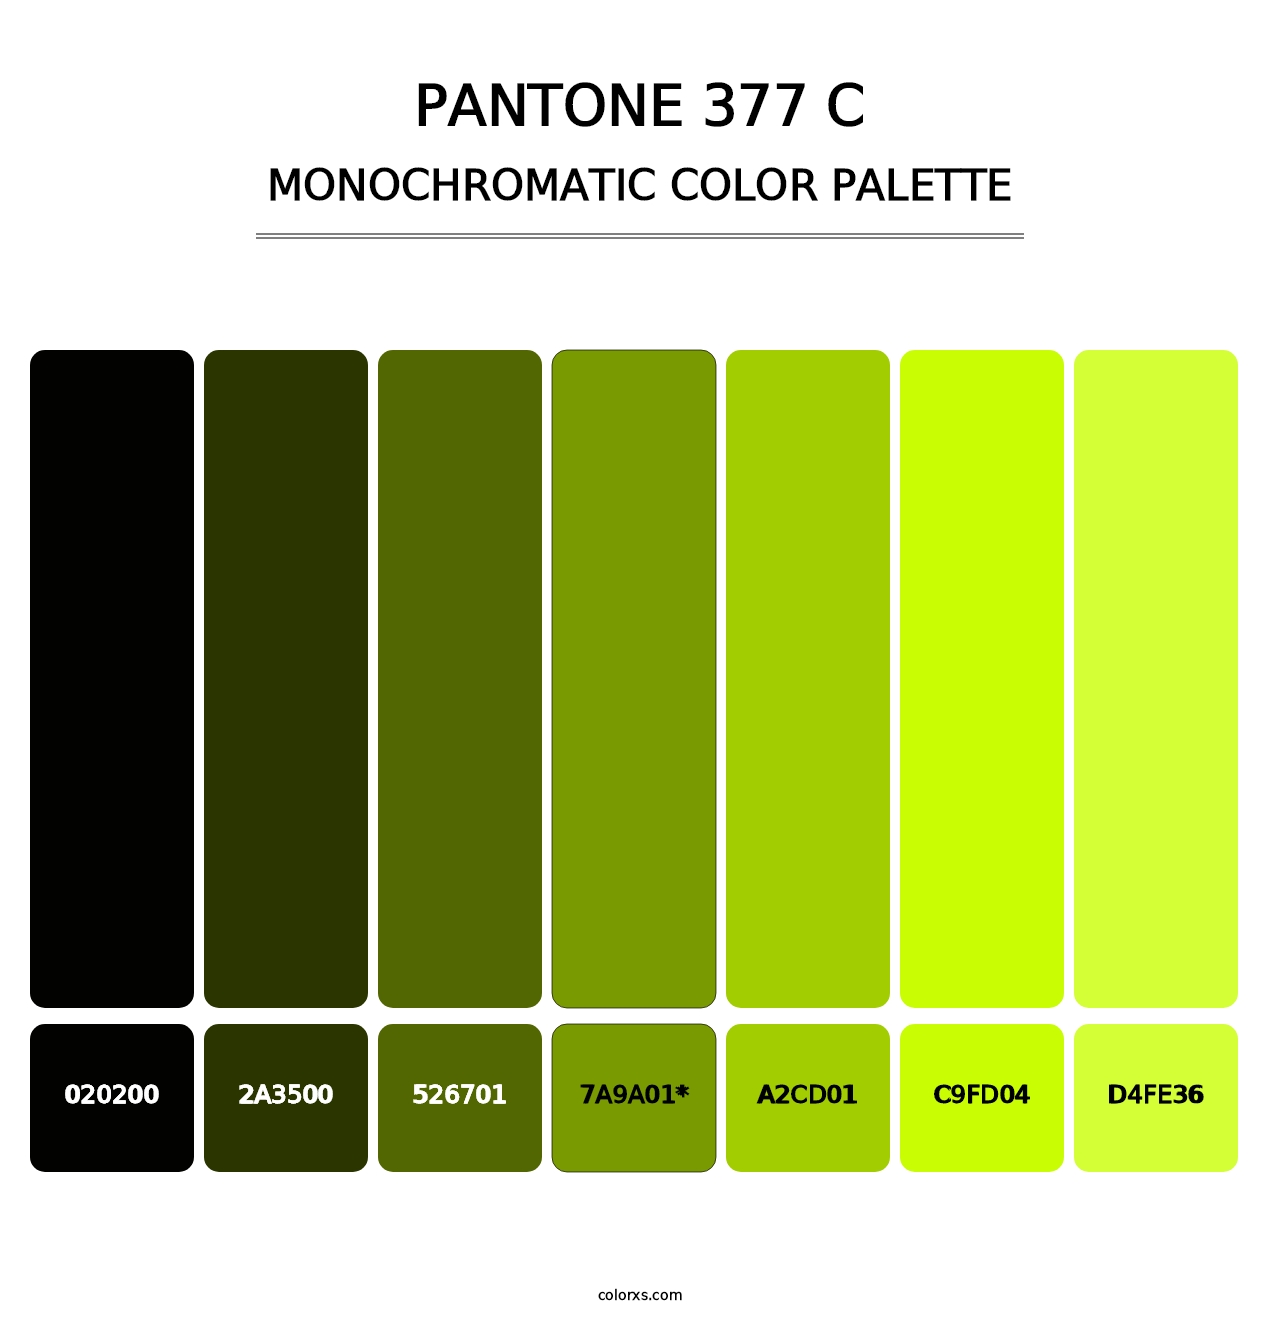 PANTONE 377 C - Monochromatic Color Palette